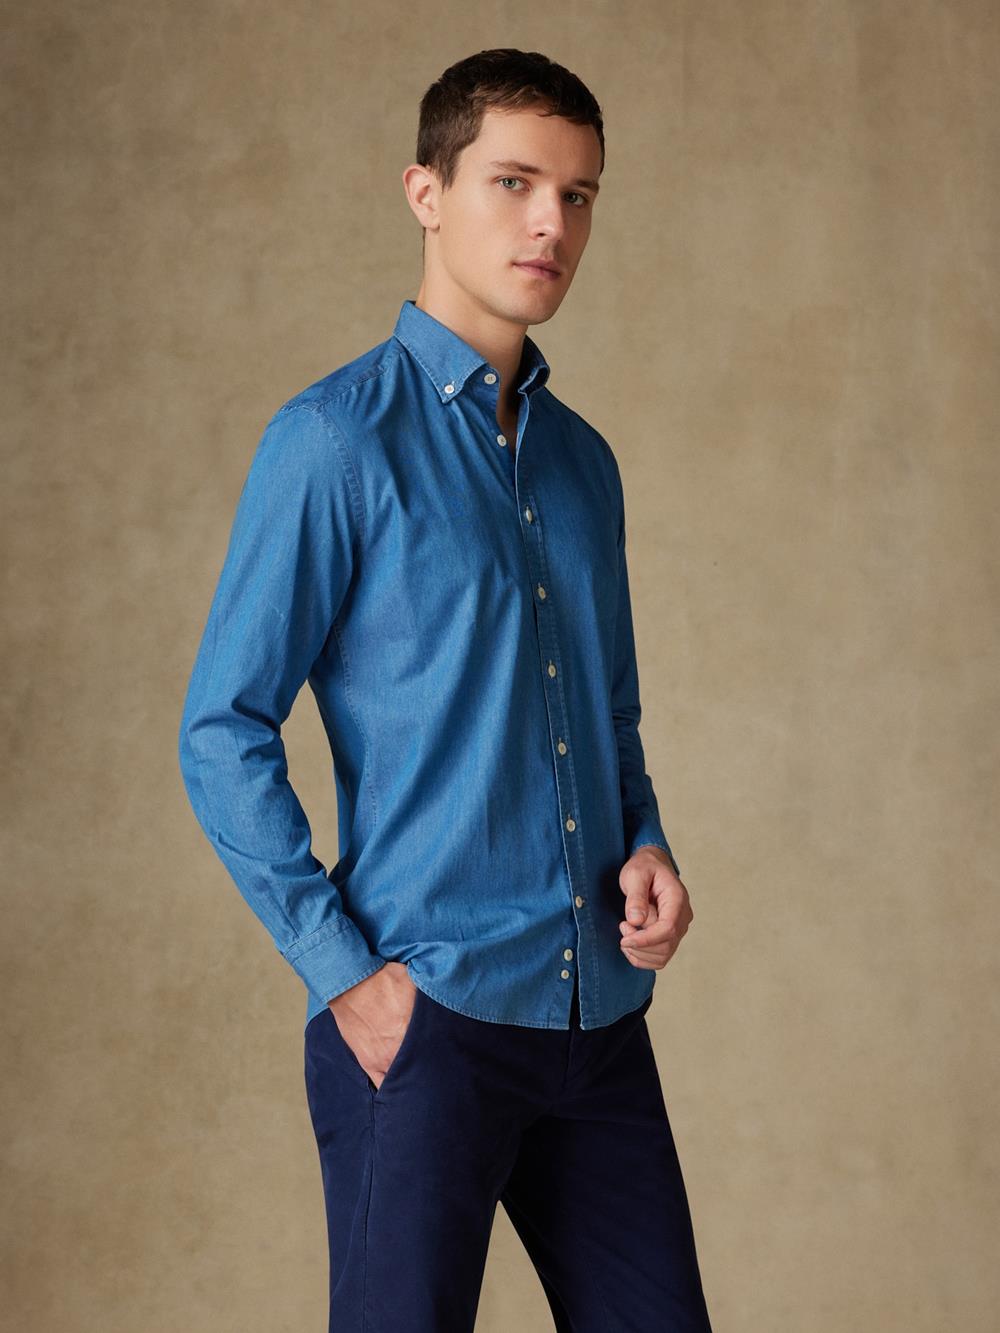 Tailliertes Tailliertes Hemd aus Denim himmelblau - Buttondown Kragen